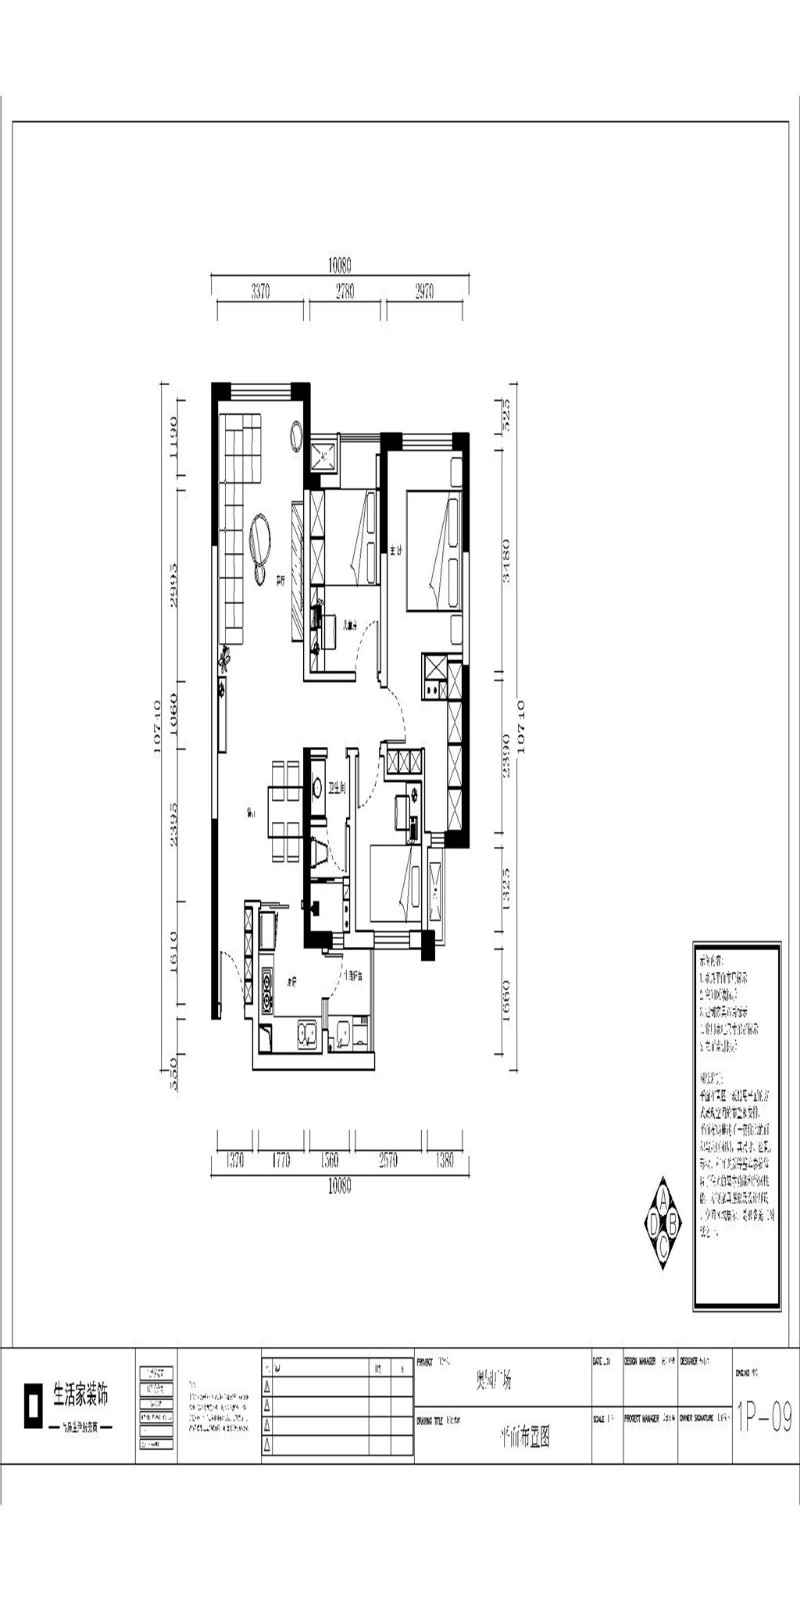 98欧式三房装修效果图,奥园广场 | 森林密语装修案例效果图-美广网(图1)